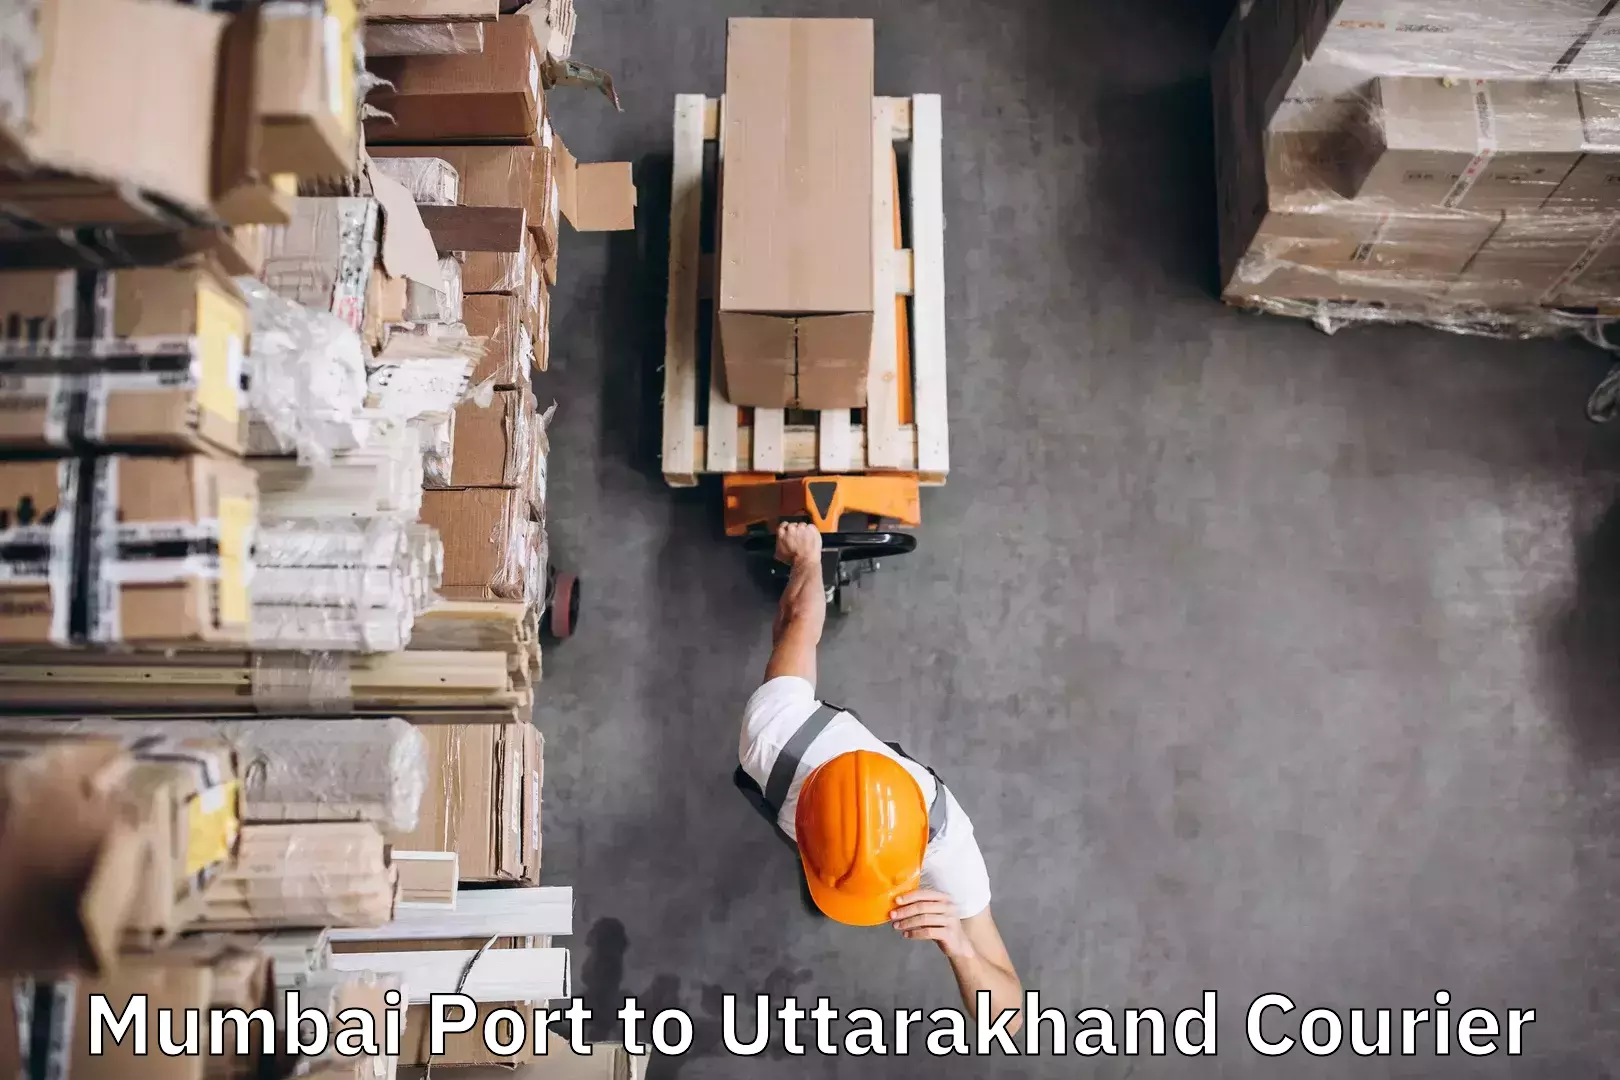 Luggage shipping service Mumbai Port to Uttarakhand